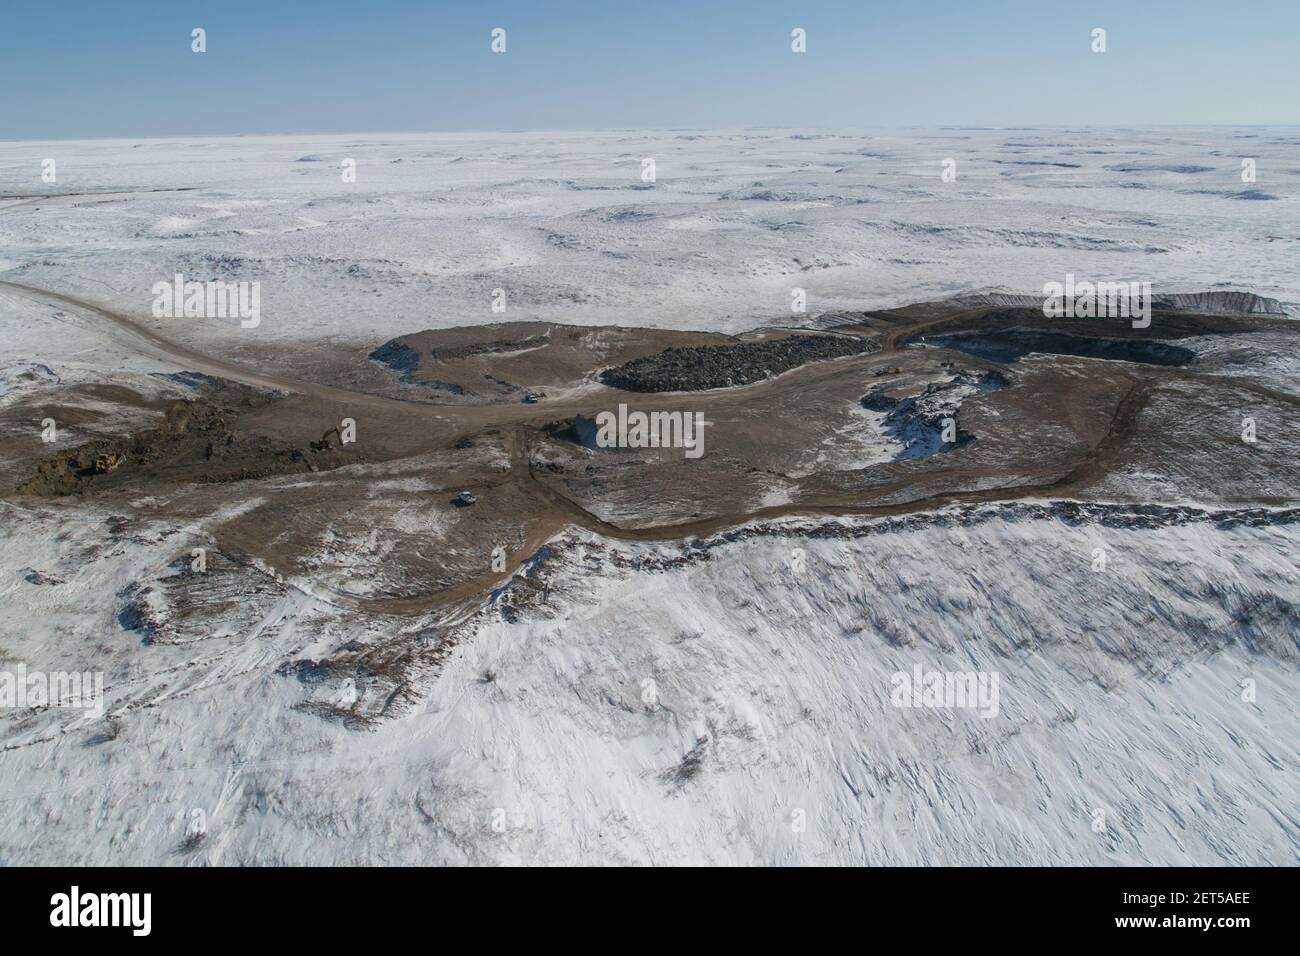 Vue aérienne de l'une des fosses de gravier utilisées pour construire la route Inuvik-Tuktoyaktuk, Territoires du Nord-Ouest, l'Arctique canadien. Banque D'Images